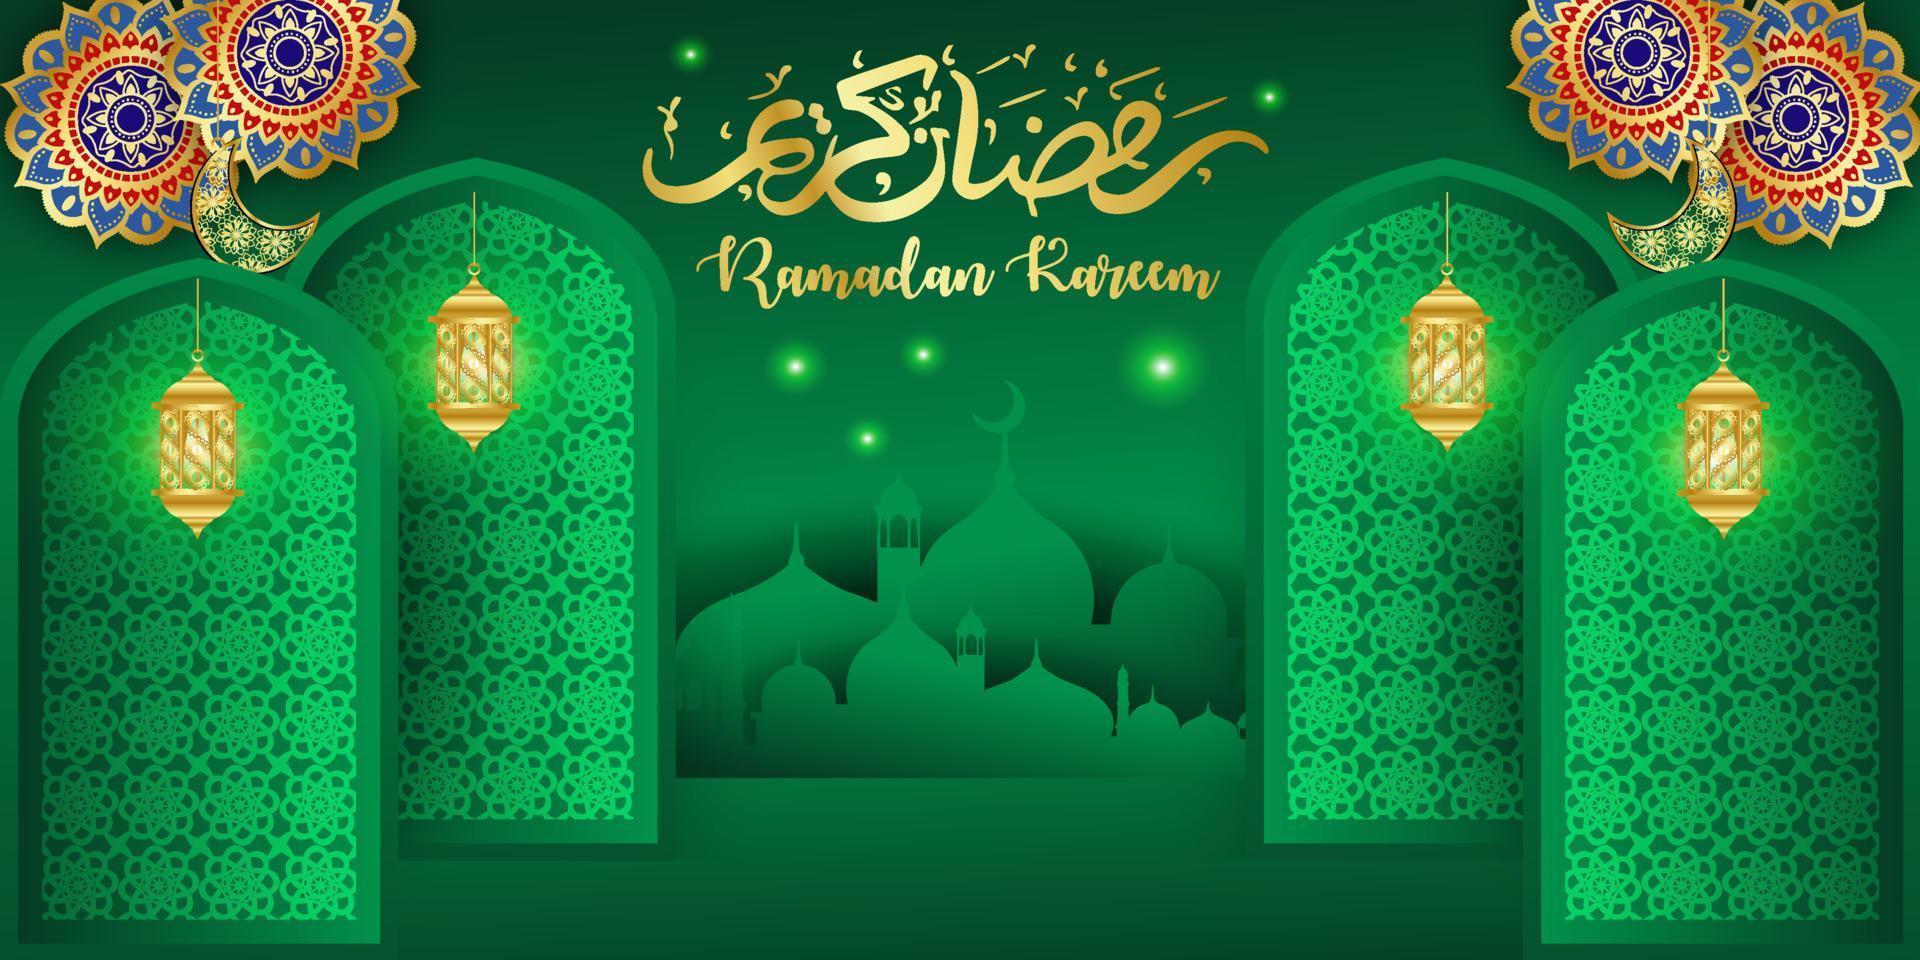 fondo de año nuevo musulmán en el mes de ramadán vector de ilustración islámica